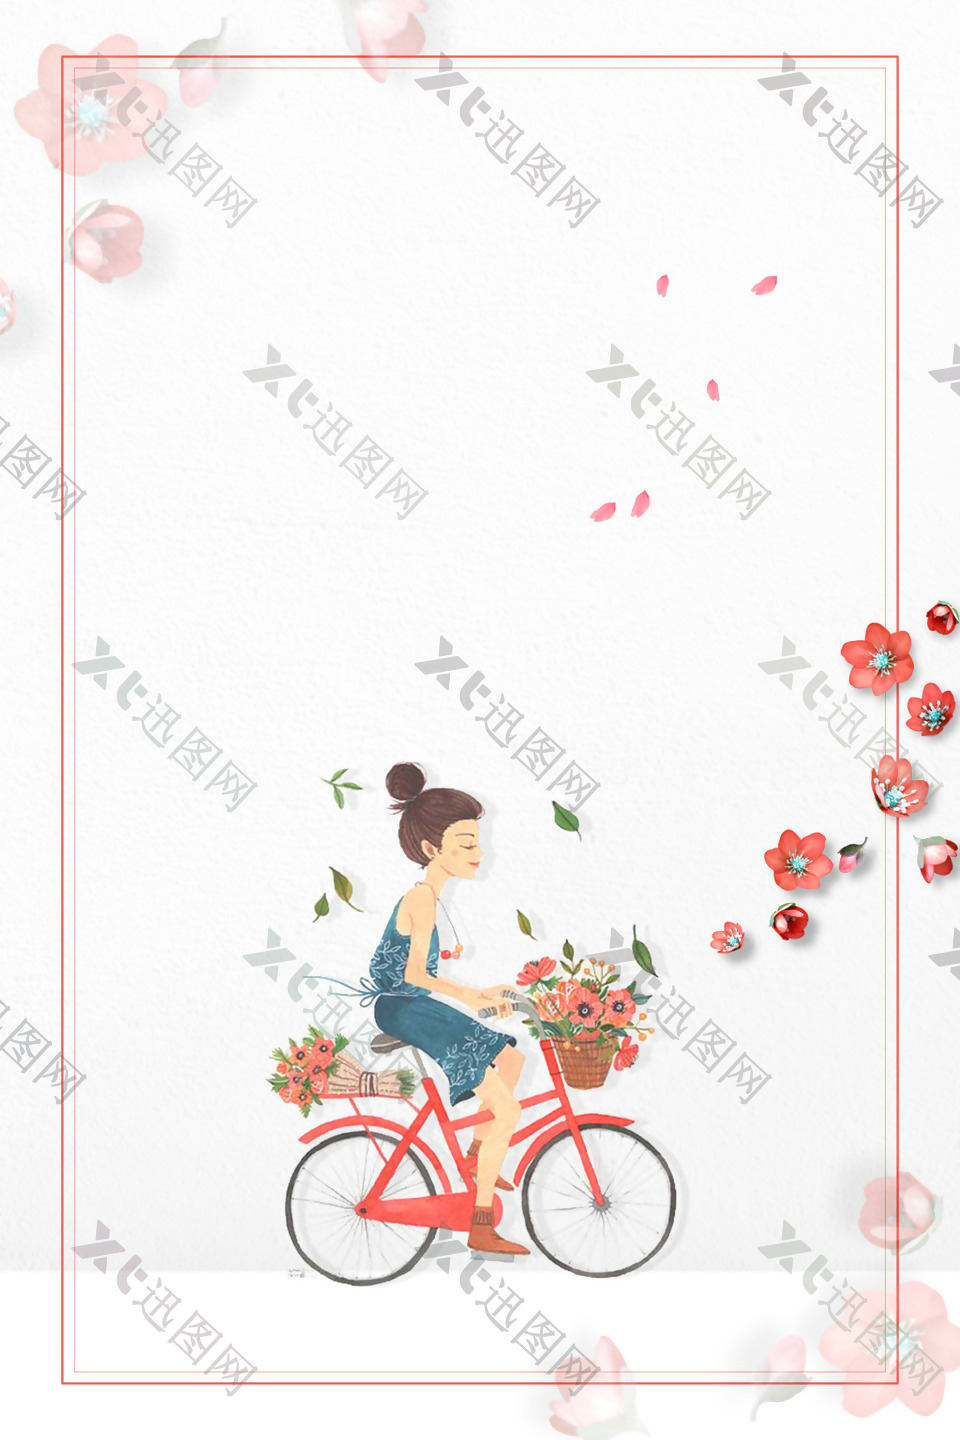 浪漫温馨花朵单车背景